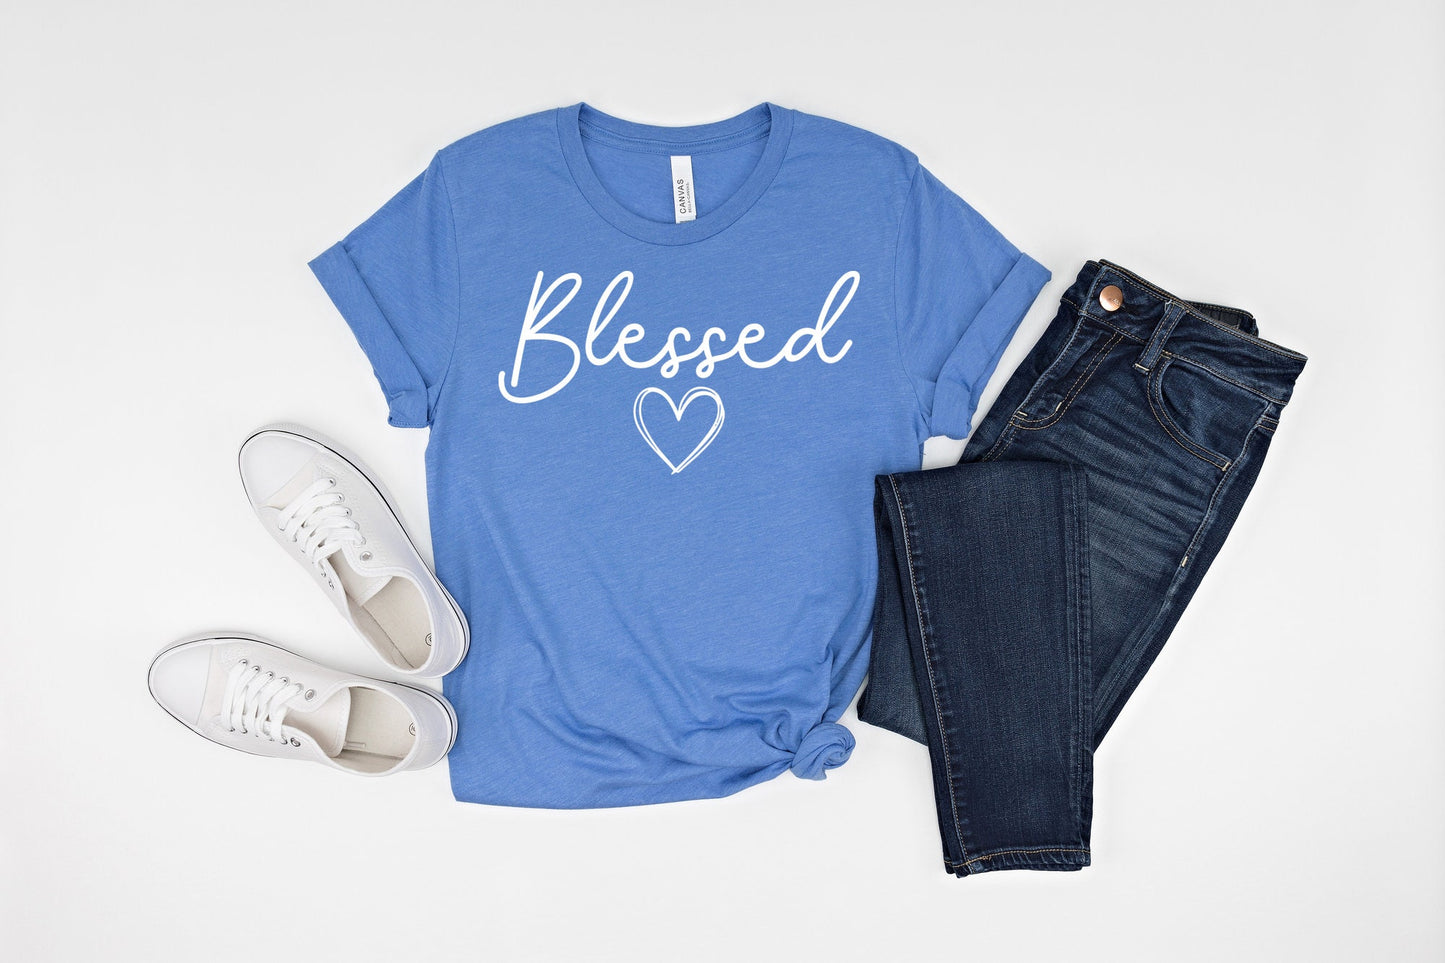 Blessed, Blessed Shirt, Cute Blessed Heart Shirt Motivational Shirt, Inspirational Shirt, Fall Shirt, Thanksgiving Shirt, Women's Shirt